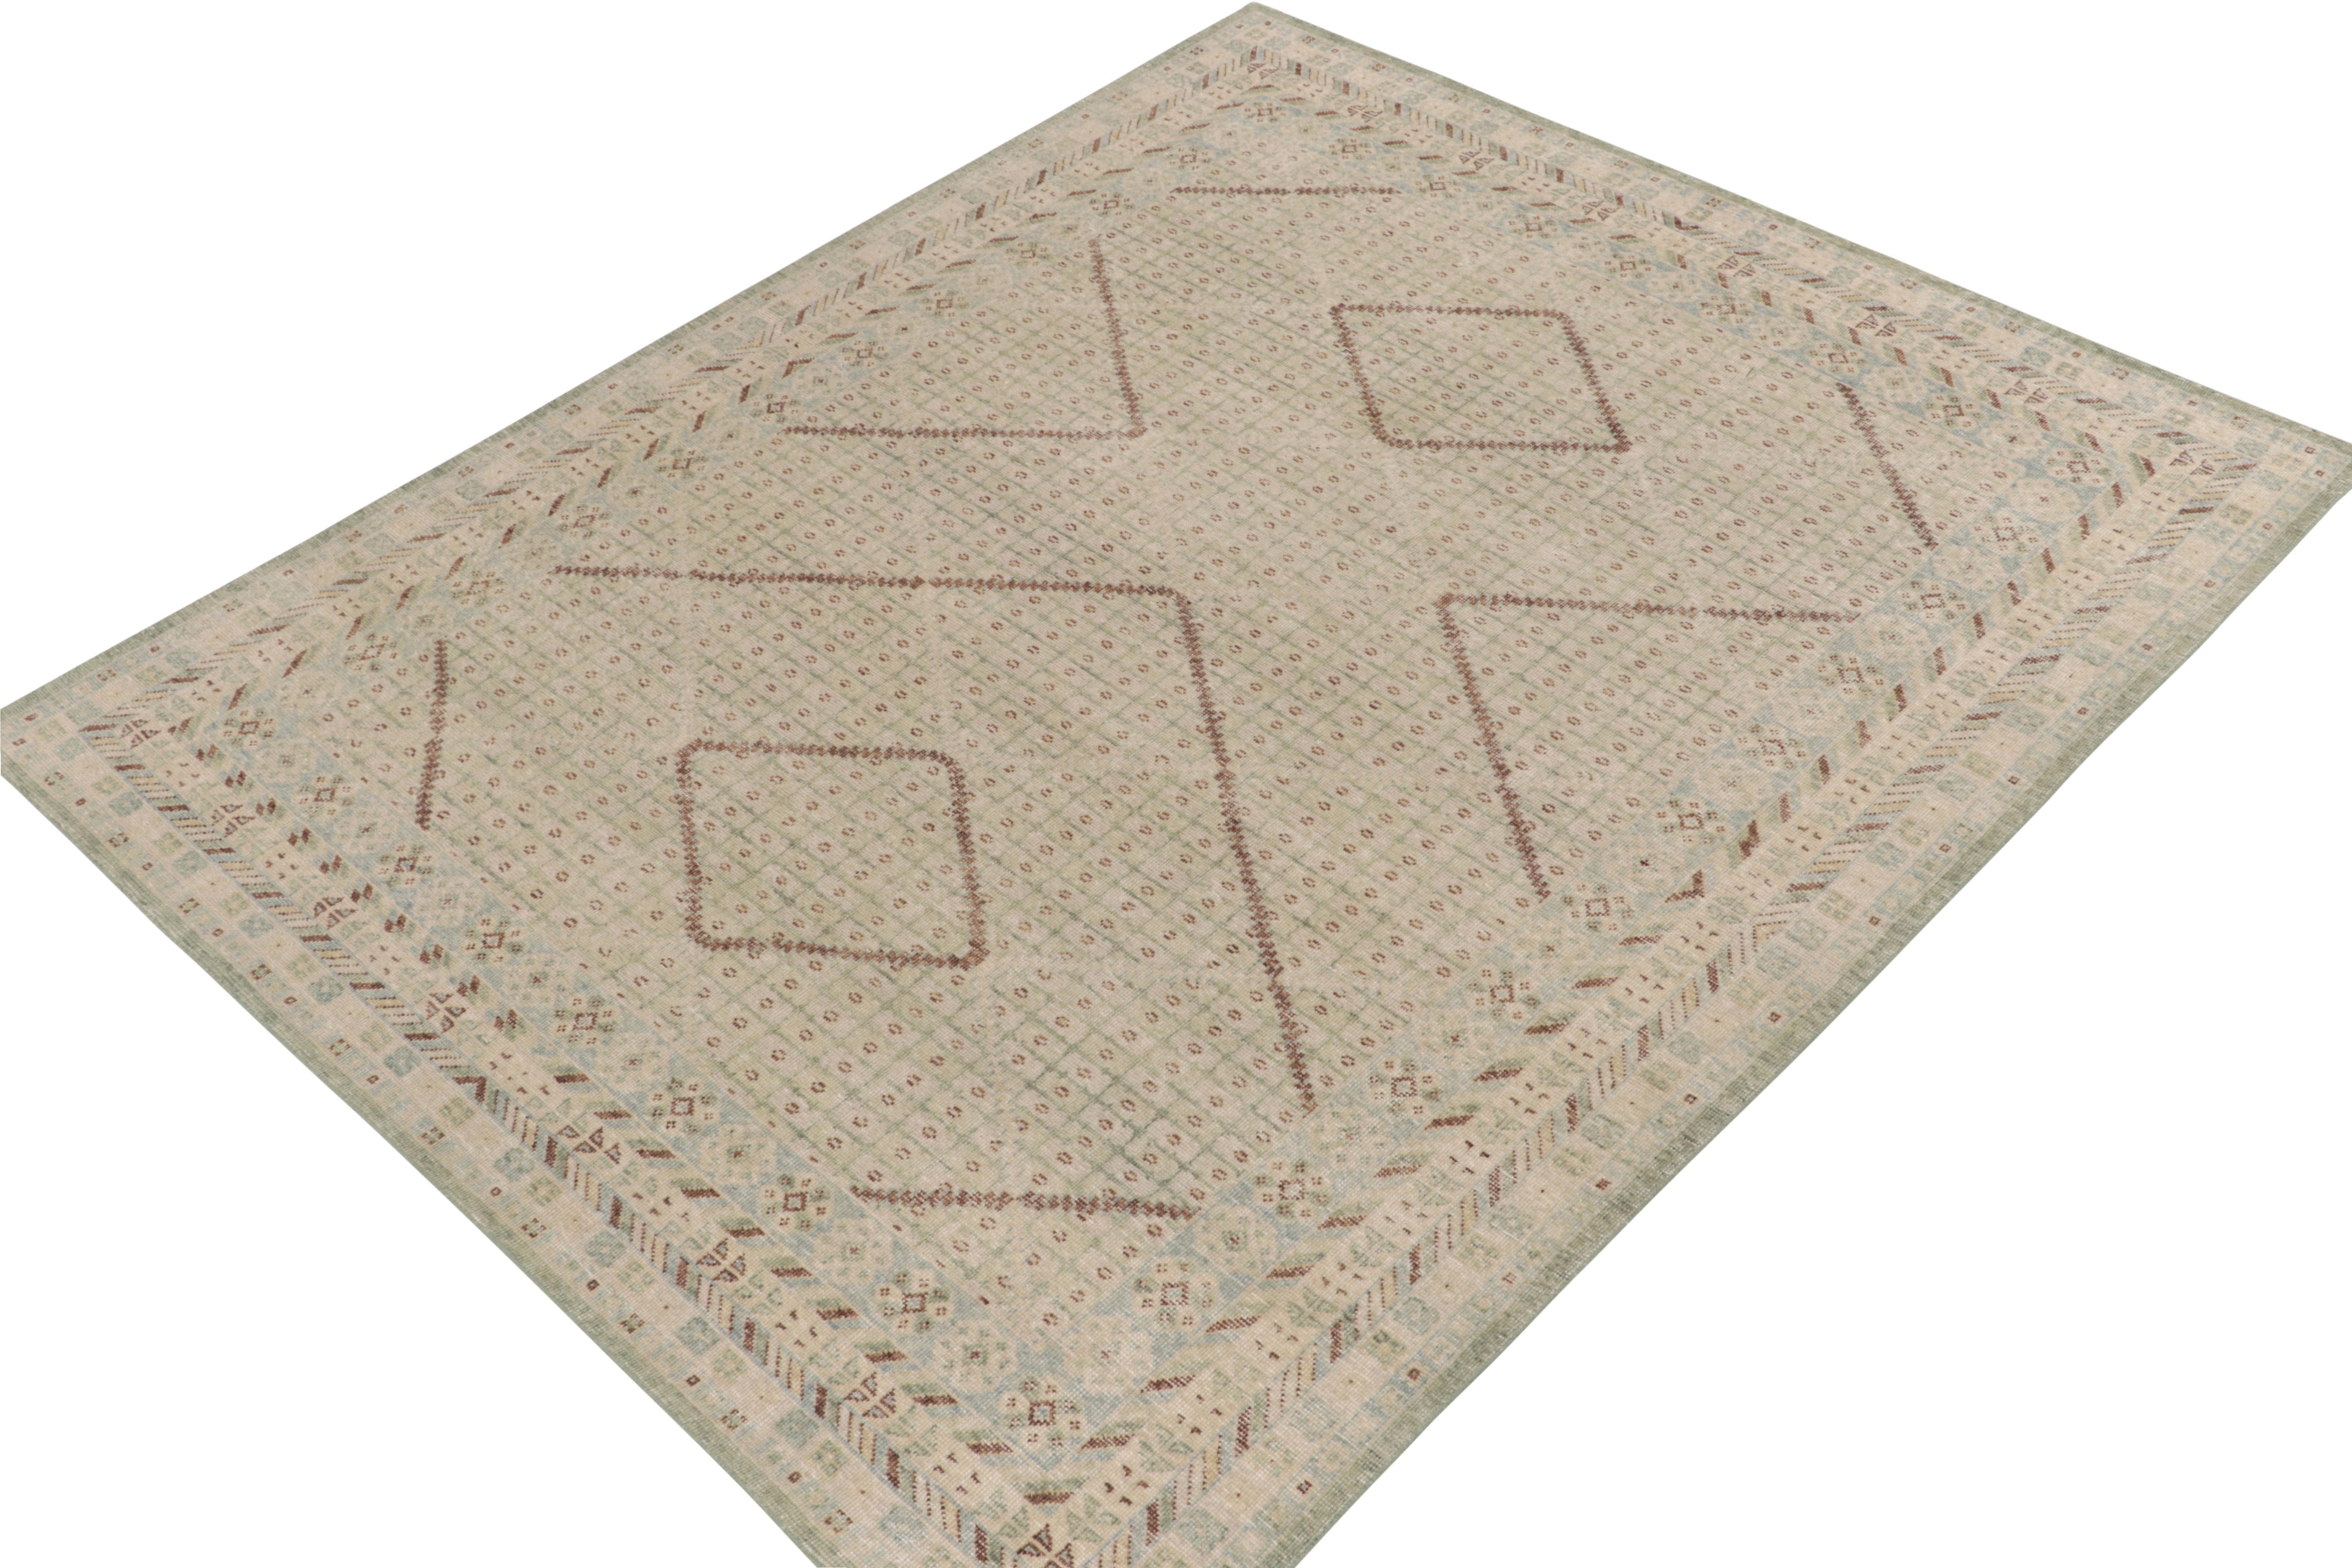 Inspiré des tapis anciens de Khotan, ce tapis 8x10 noué à la main est l'un des modèles les plus uniques et les plus indulgents sélectionnés par notre directeur dans le cadre de son expérience avec les classiques. Avec un jeu de géométrie